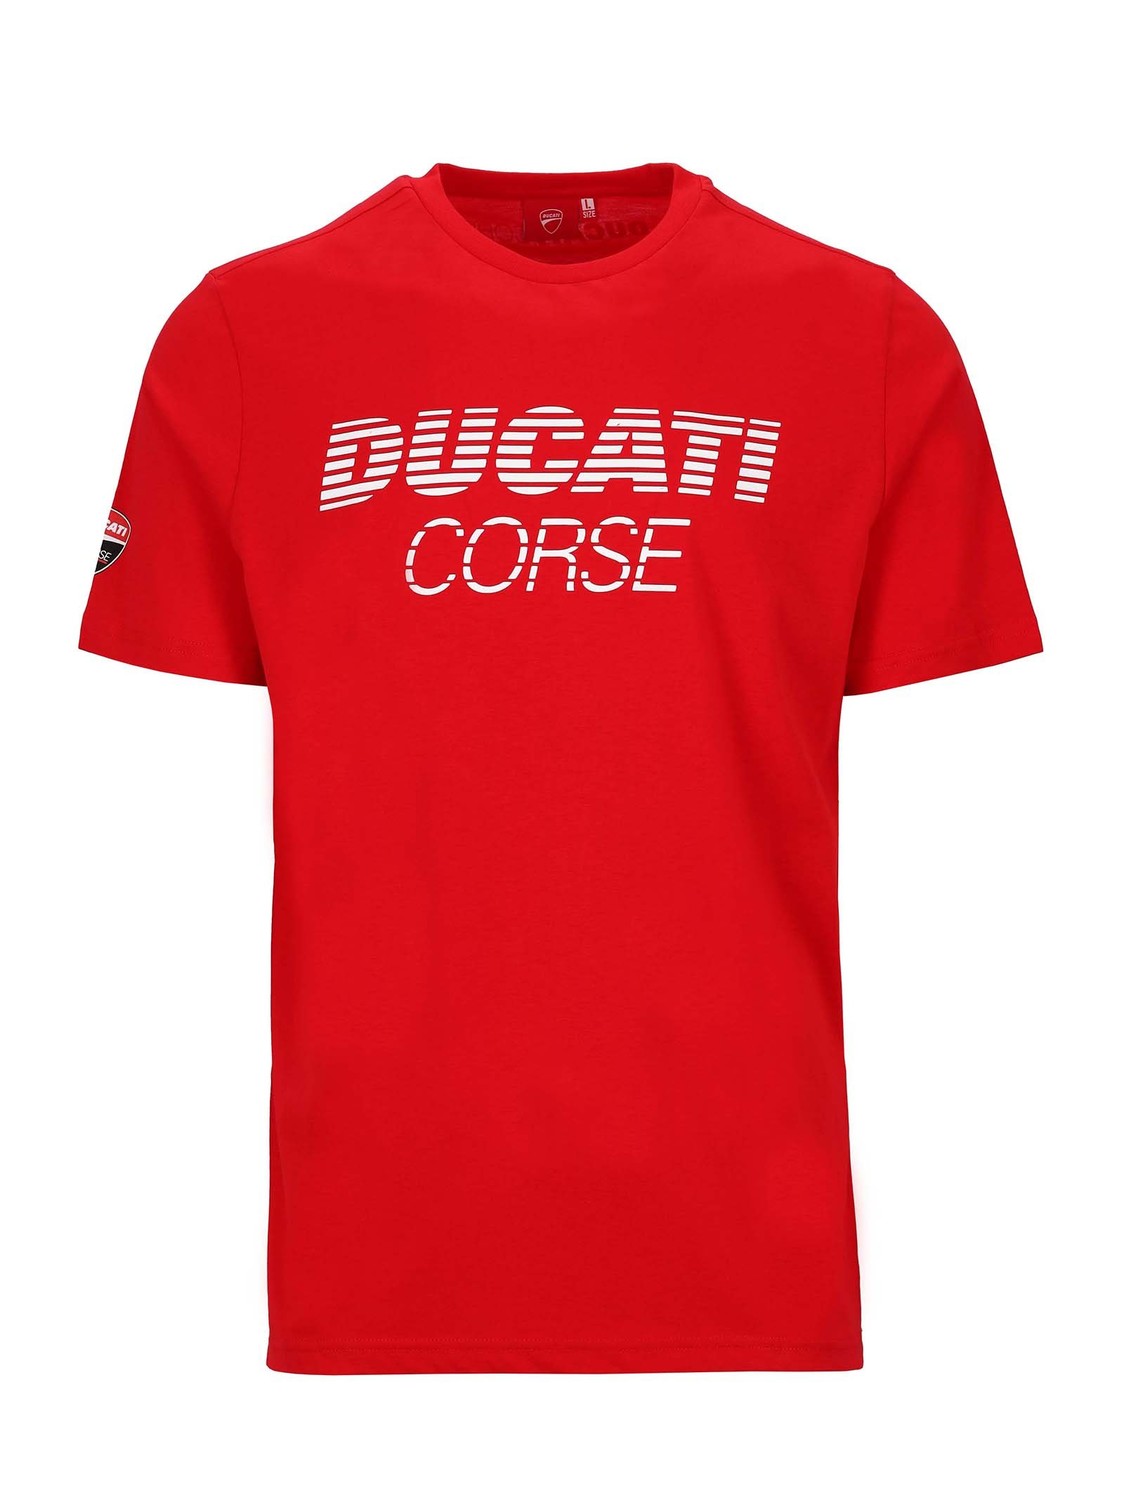 GP Racing Apparel Ducati Corse triko Corse červené M